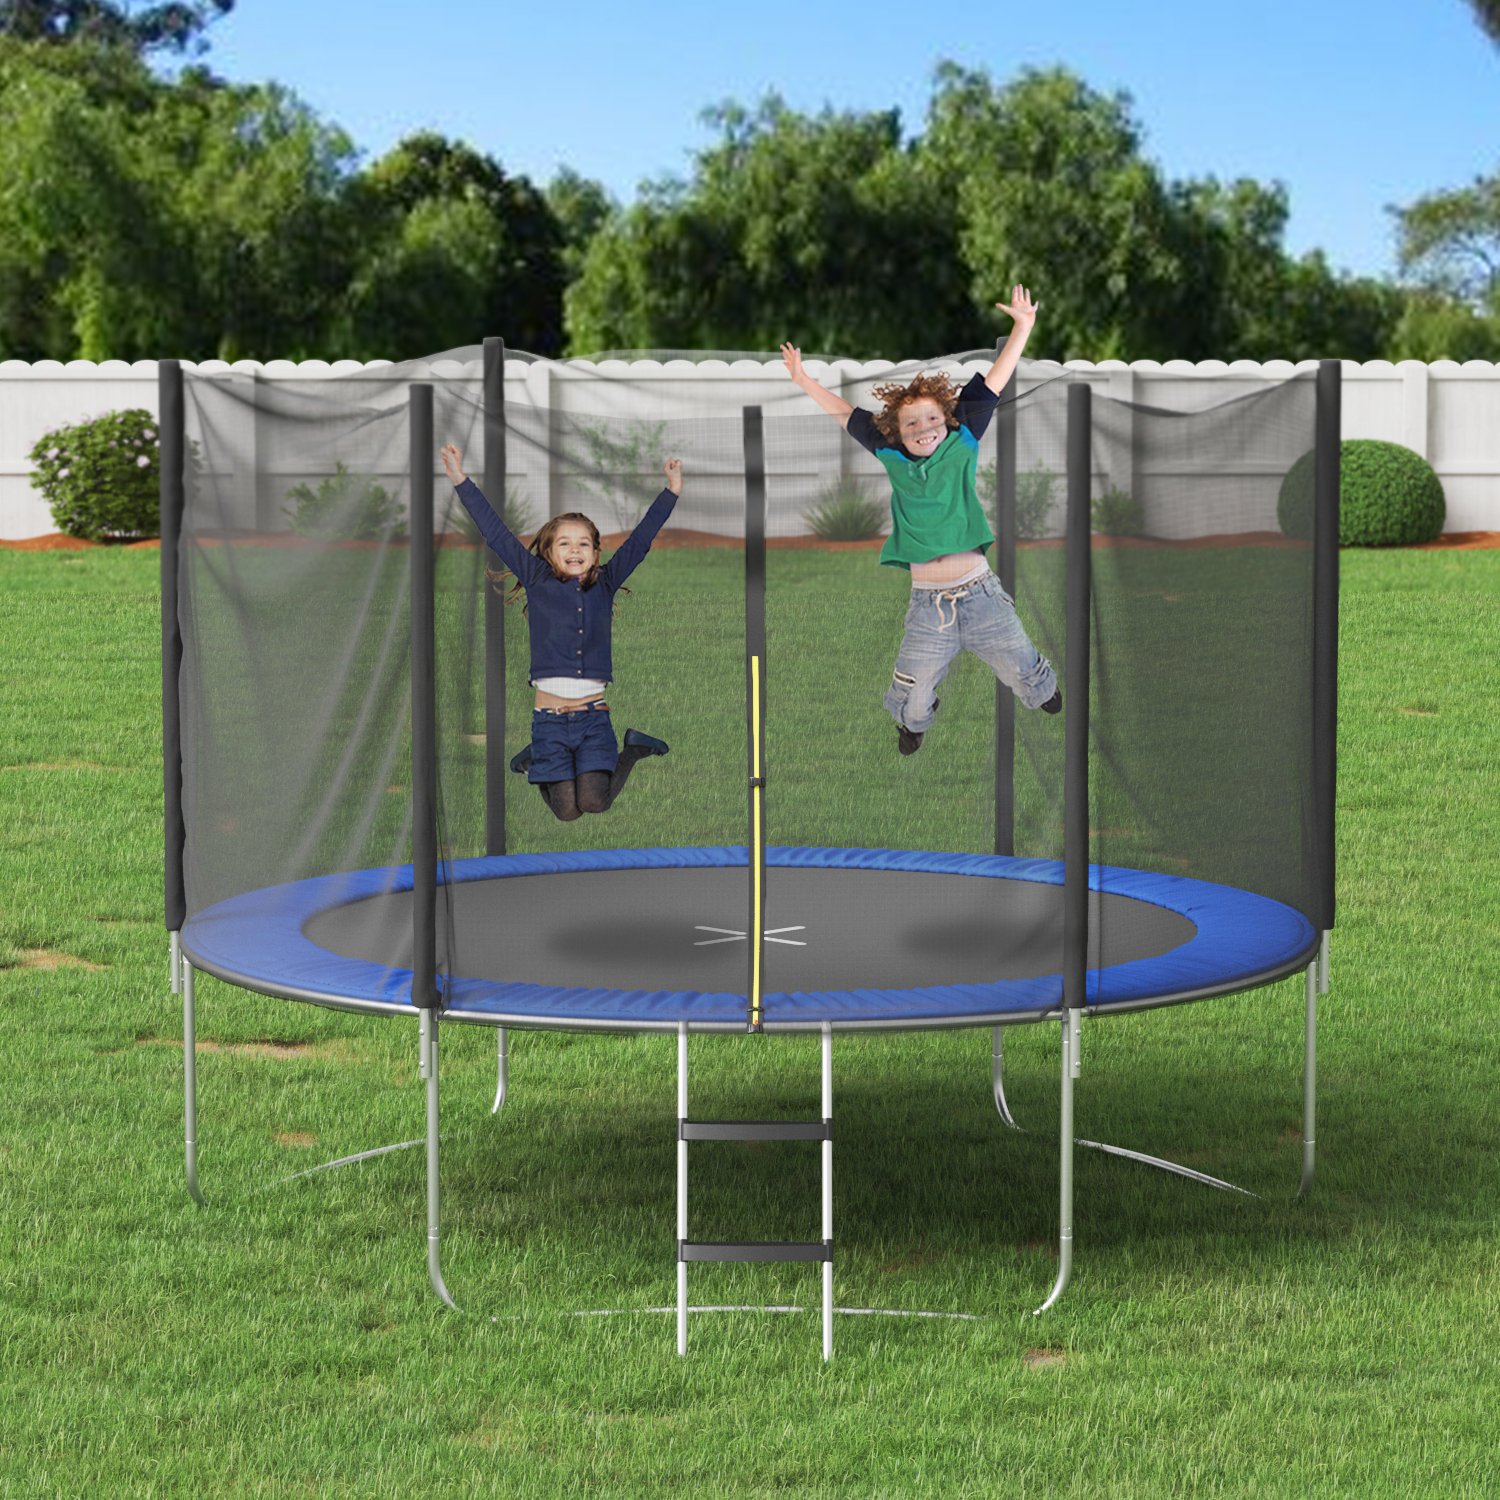 https://assets.wfcdn.com/im/60165749/compr-r85/2101/210155027/devoko-10-round-backyard-trampoline-with-safety-enclosure.jpg